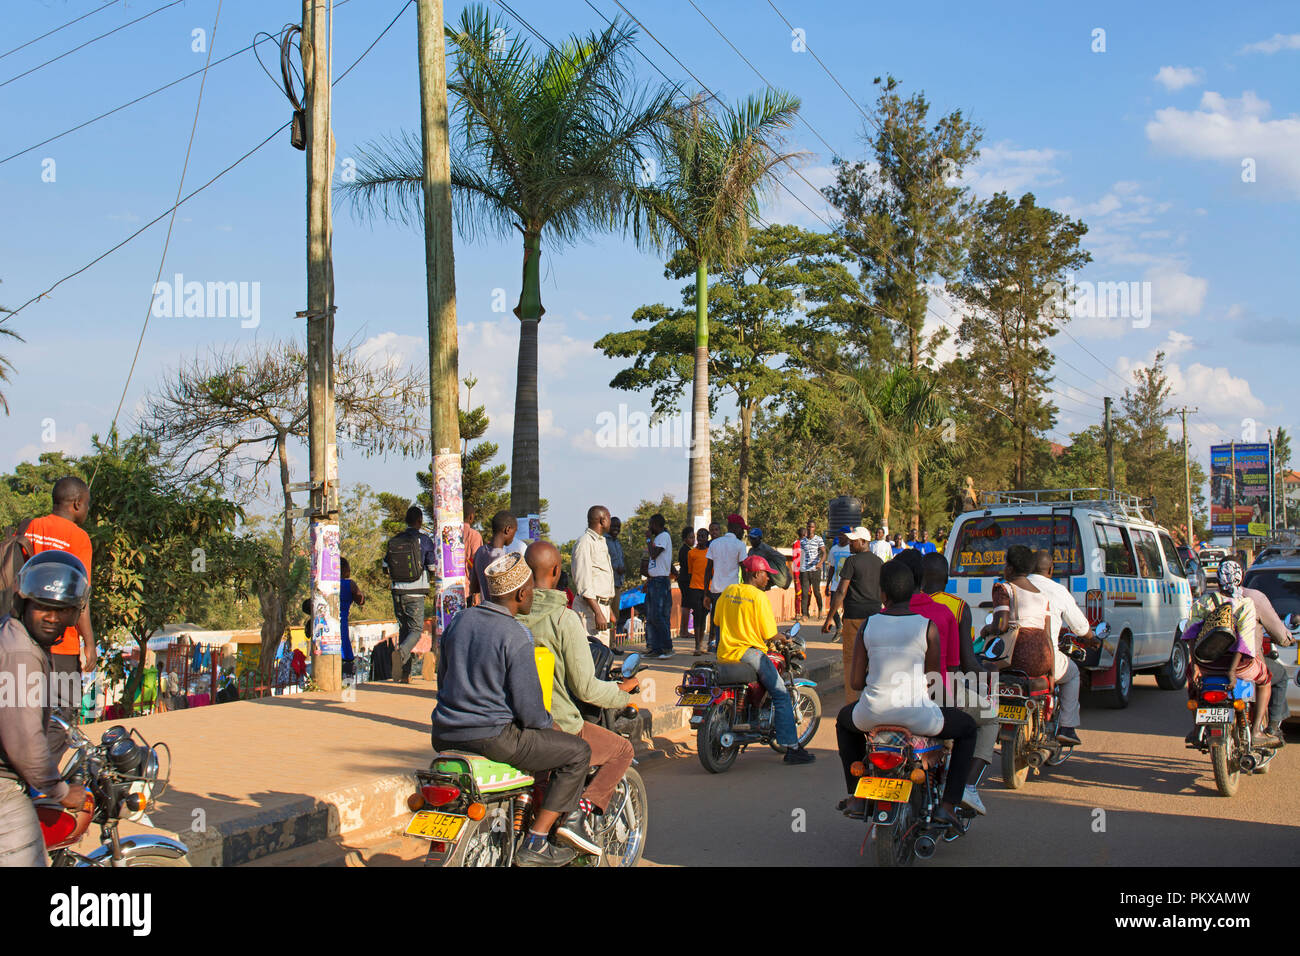 Calle de la ciudad ocupada con el tráfico y la gente, Boda Boda, ciudad de Mbarara, Uganda, África oriental Foto de stock